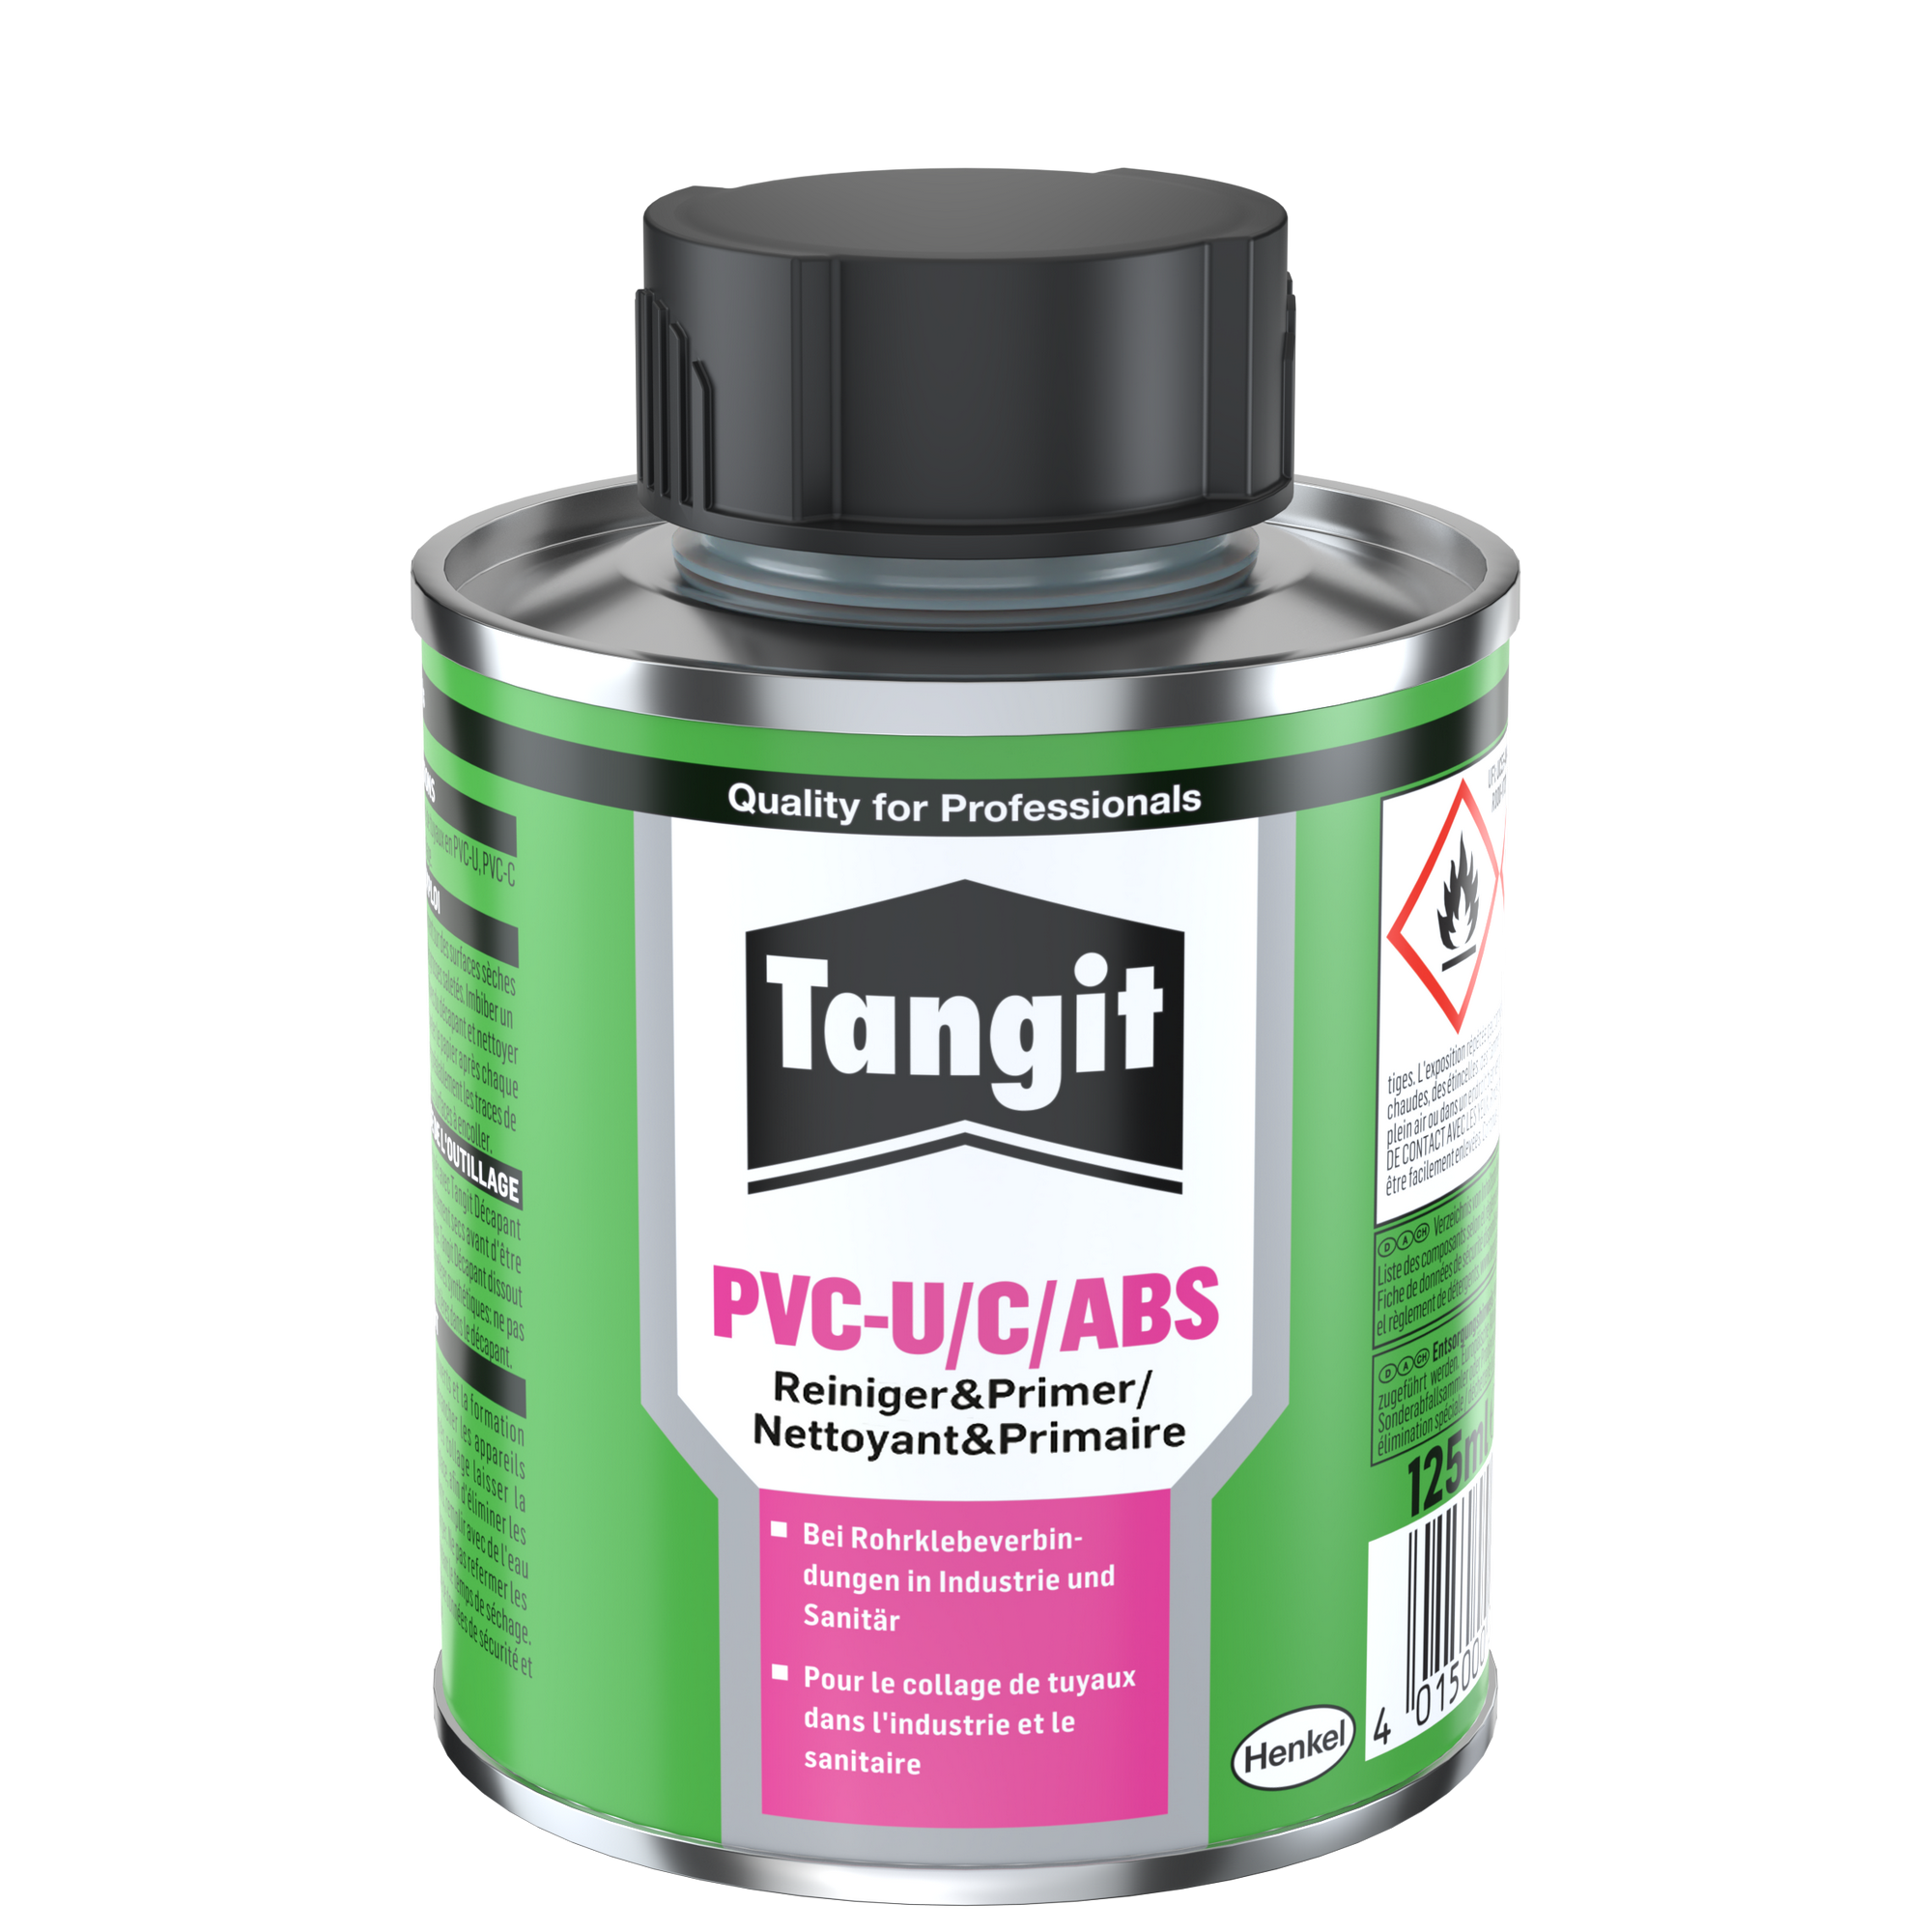 PVC Reiniger & Primer 'PVC-U/C/ABS' 125 ml + product picture